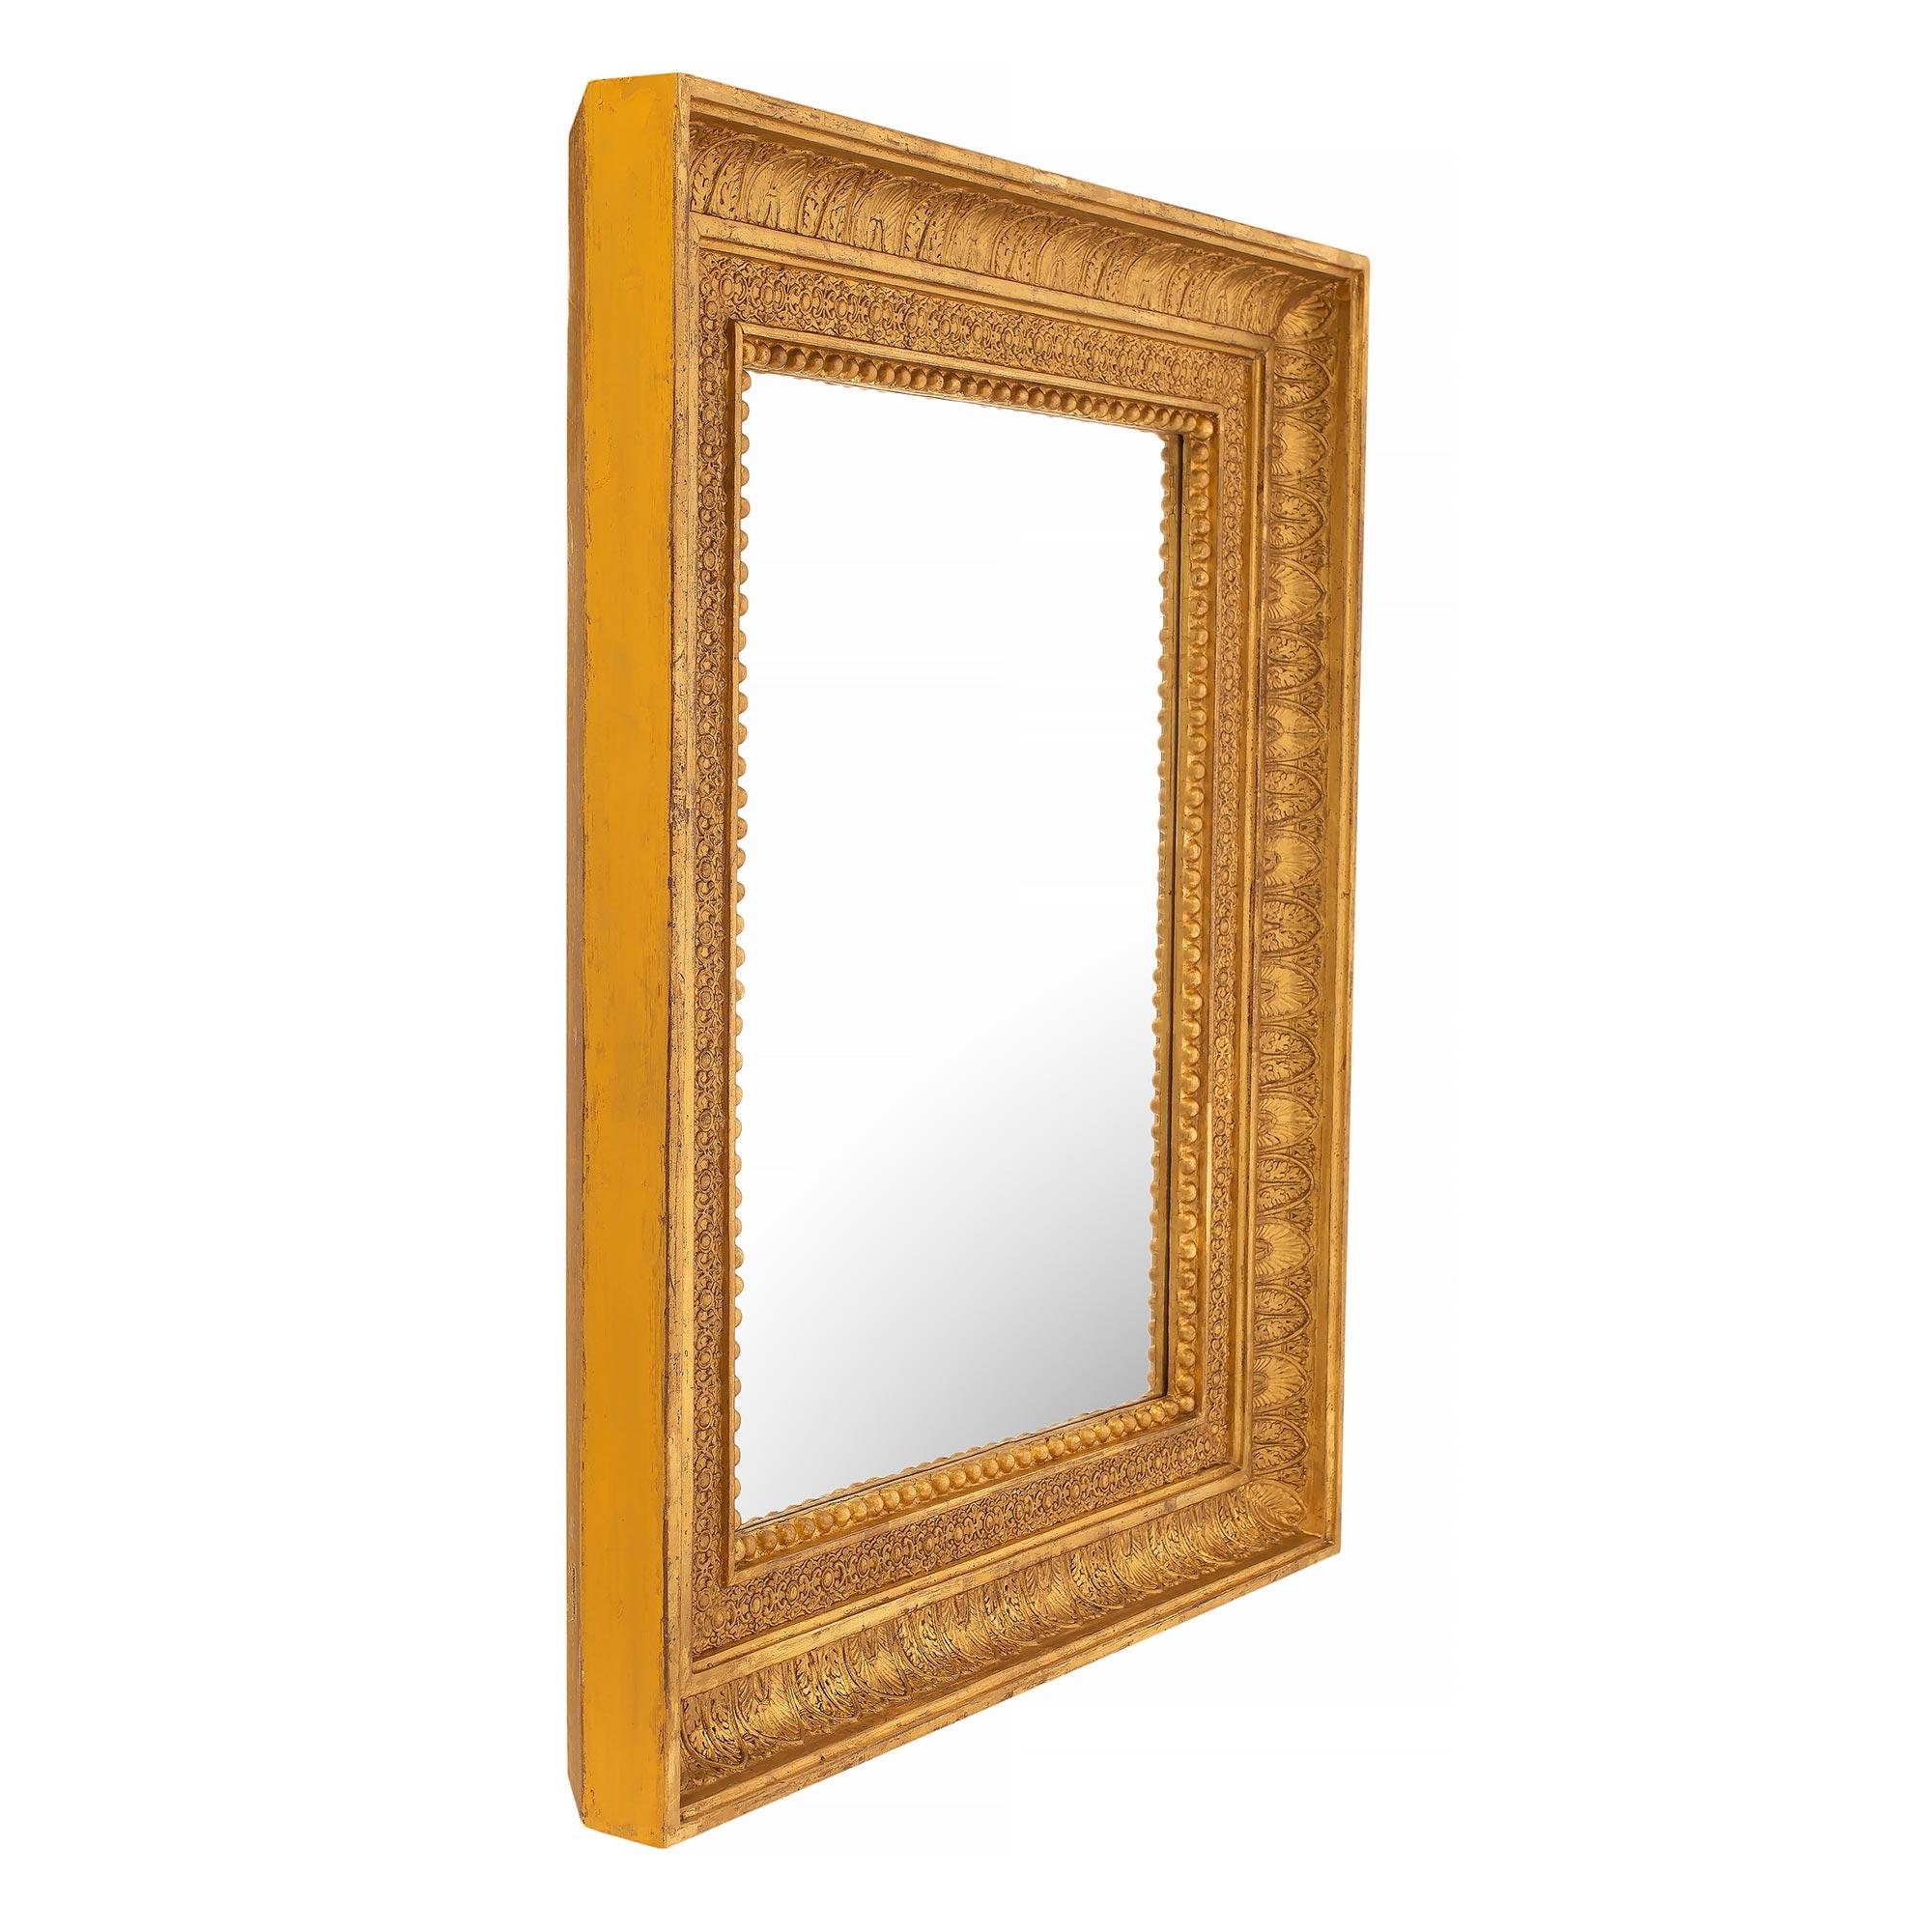 Une belle paire de miroirs en bois doré de style Louis XVI du 19ème siècle. Chaque miroir conserve sa plaque d'origine, encadrée d'une bordure en bois doré chiné richement sculptée. La bordure présente un fin motif perlé et de belles sculptures de